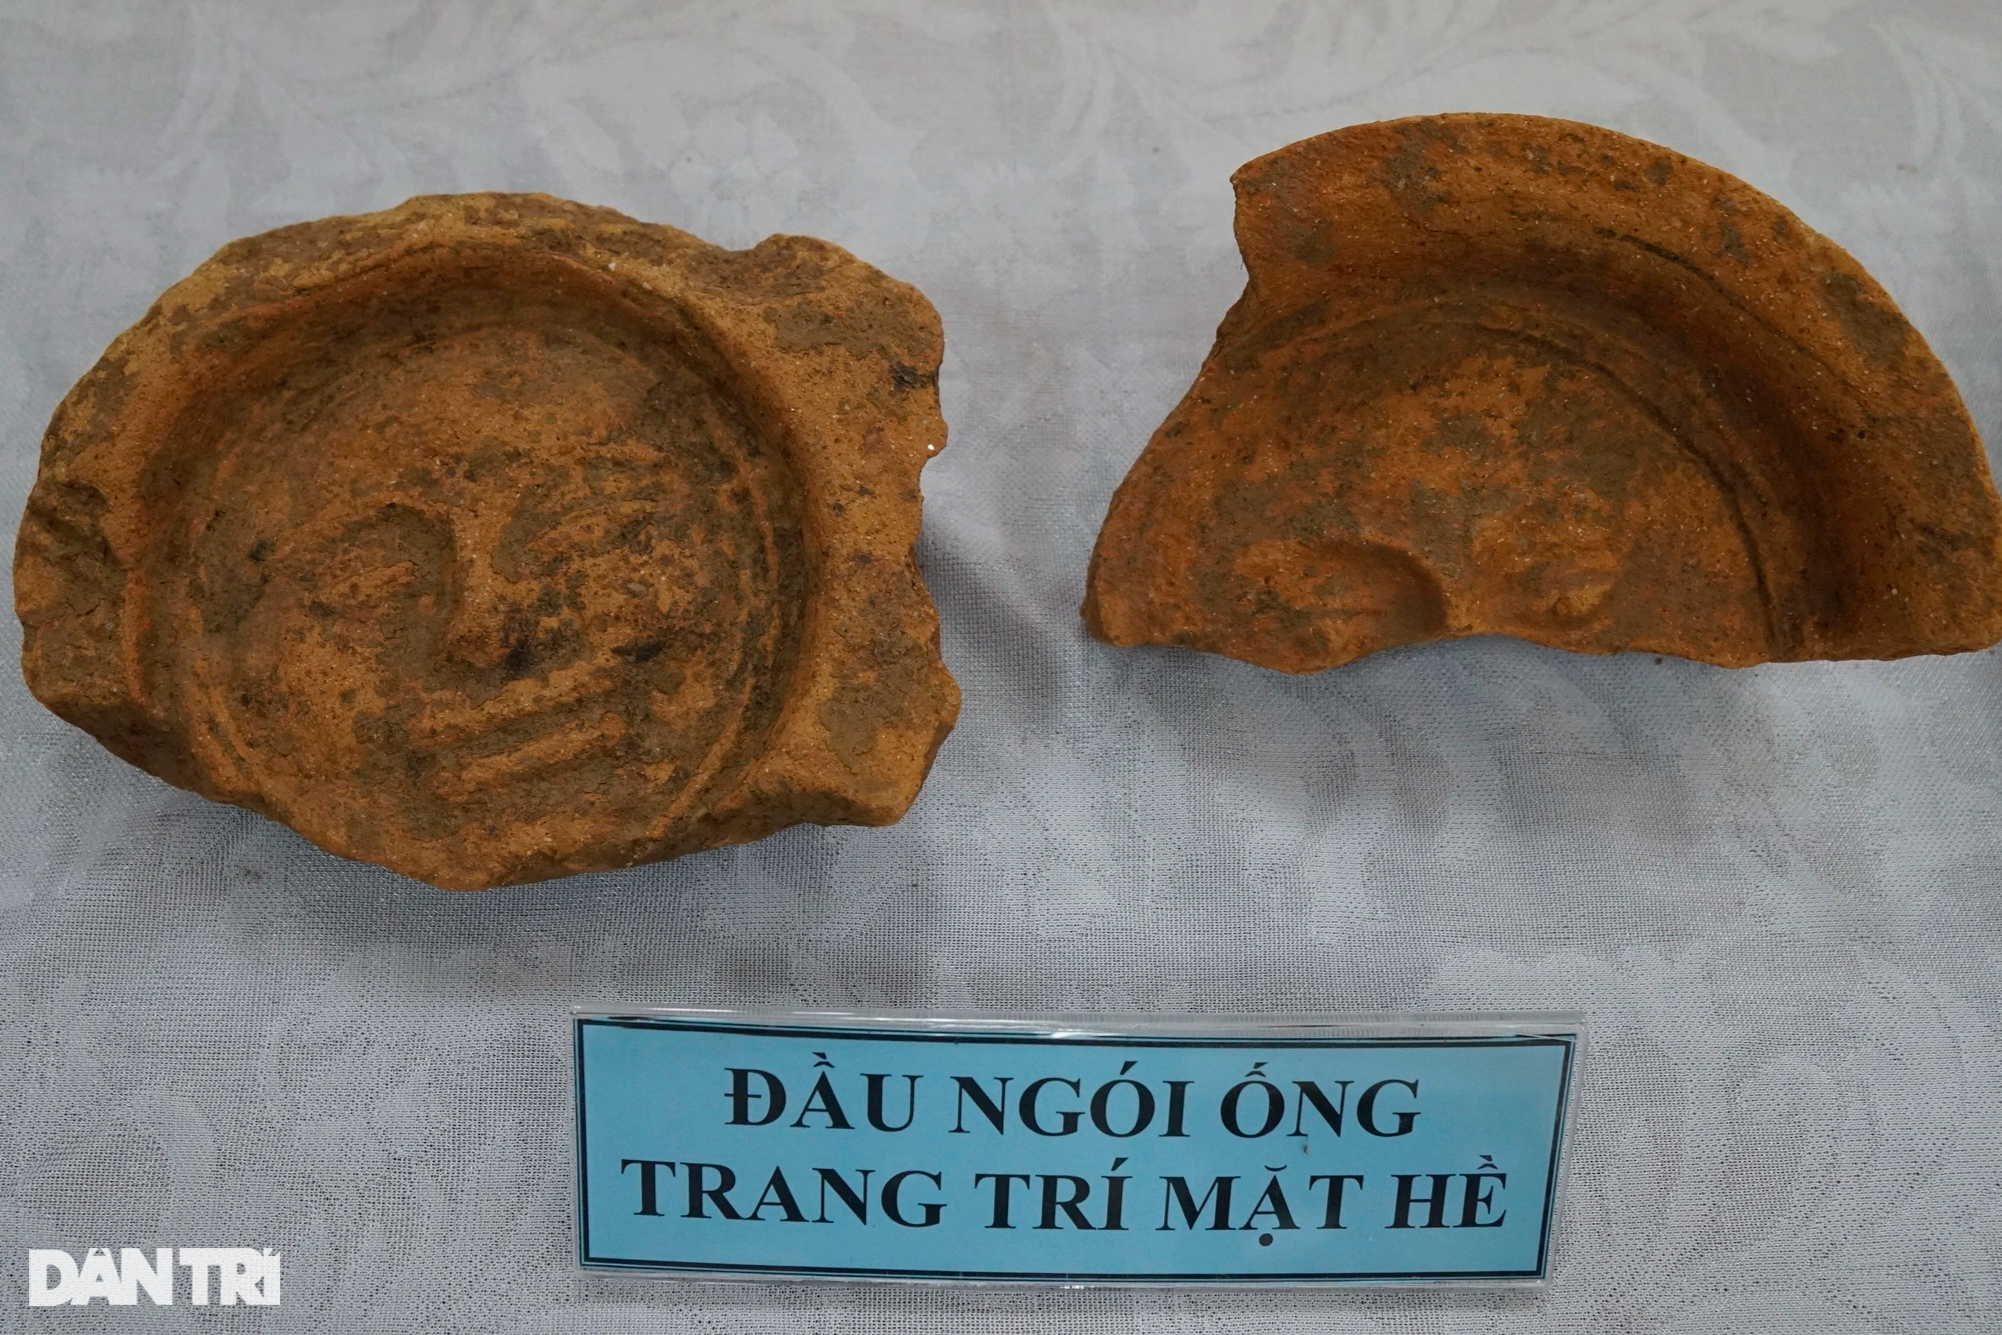 Khai quật phế tích cổ hơn 1.500 năm của người Chăm ở Bình Định - 8